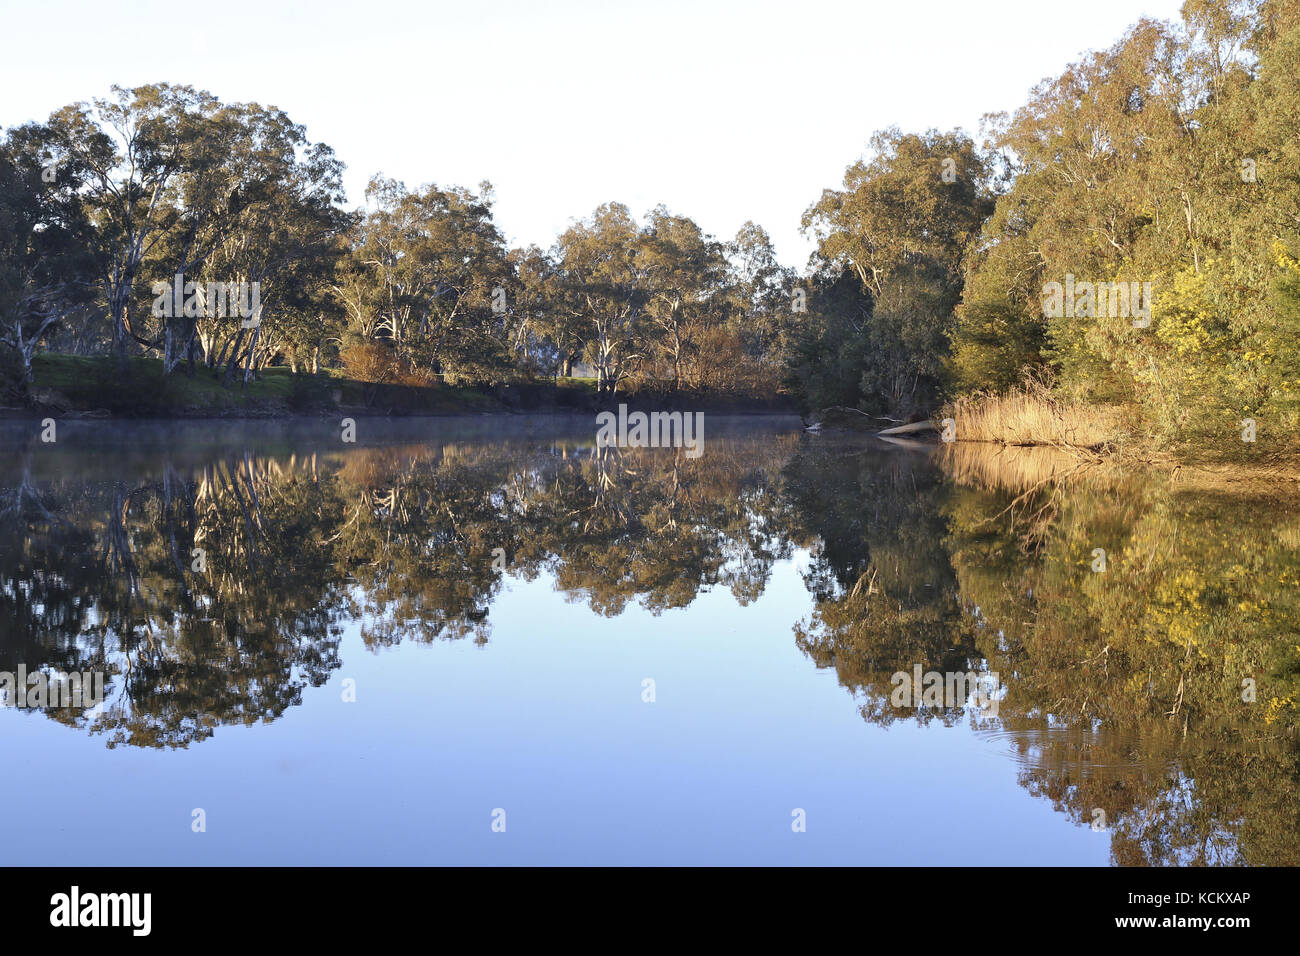 Tôt le matin sur la rivière Goulburn, pêche, canotage et destination de vacances au bord de la rivière. Seymour, centre de Victoria, Australie Banque D'Images